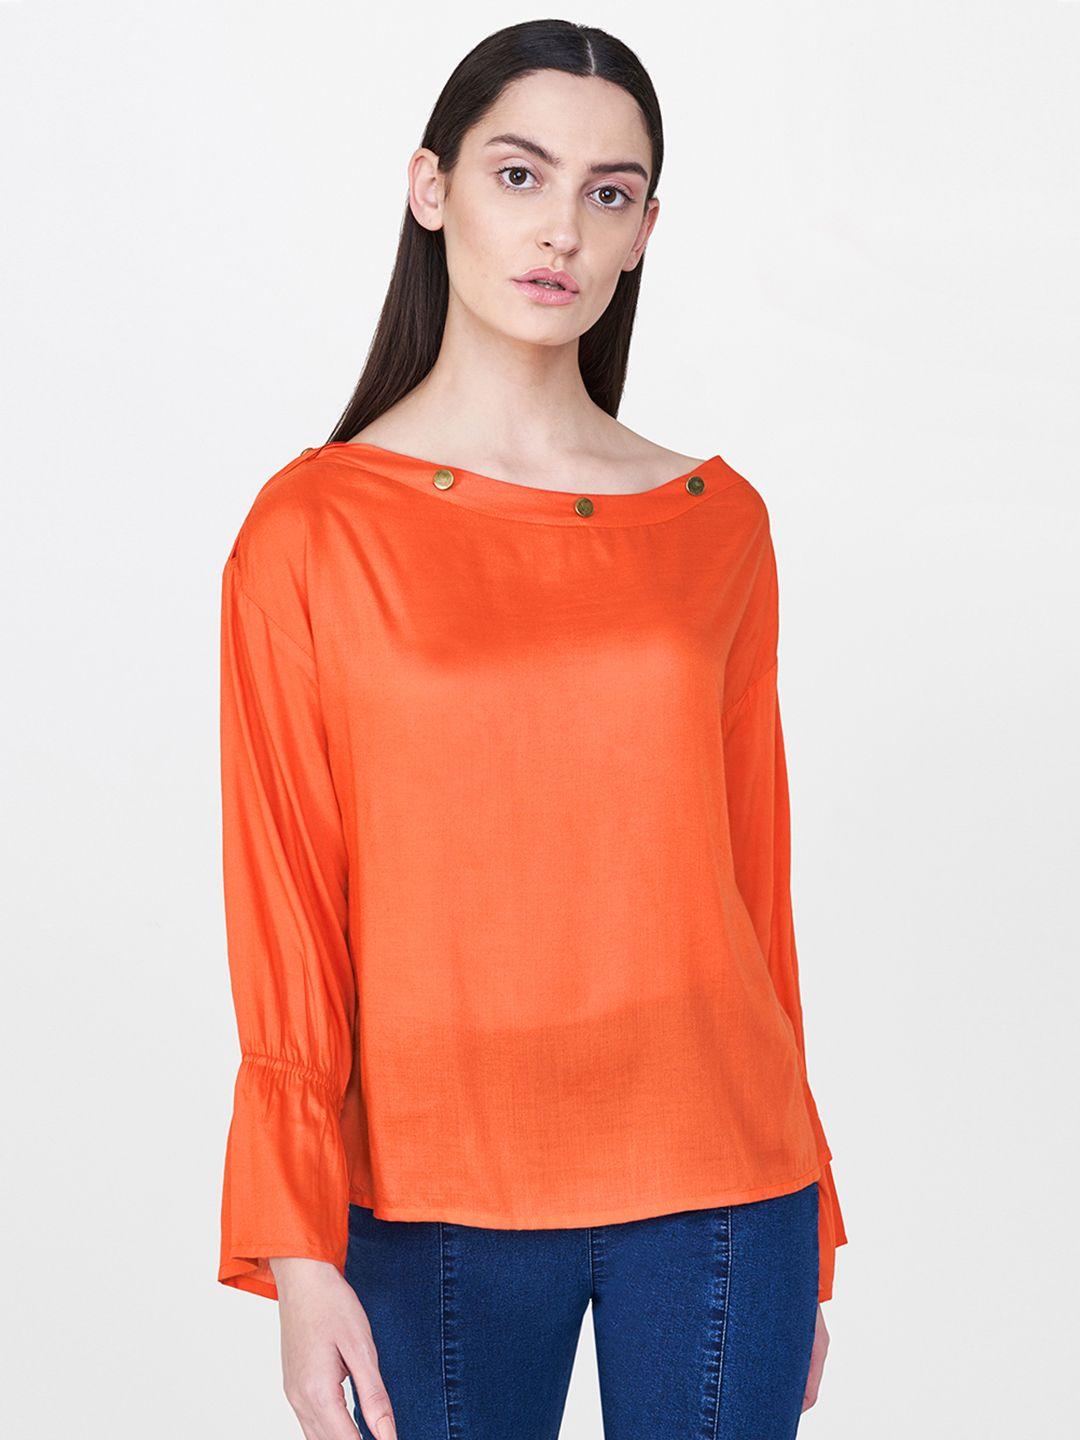 and-women-orange-solid-semi-sheer-top